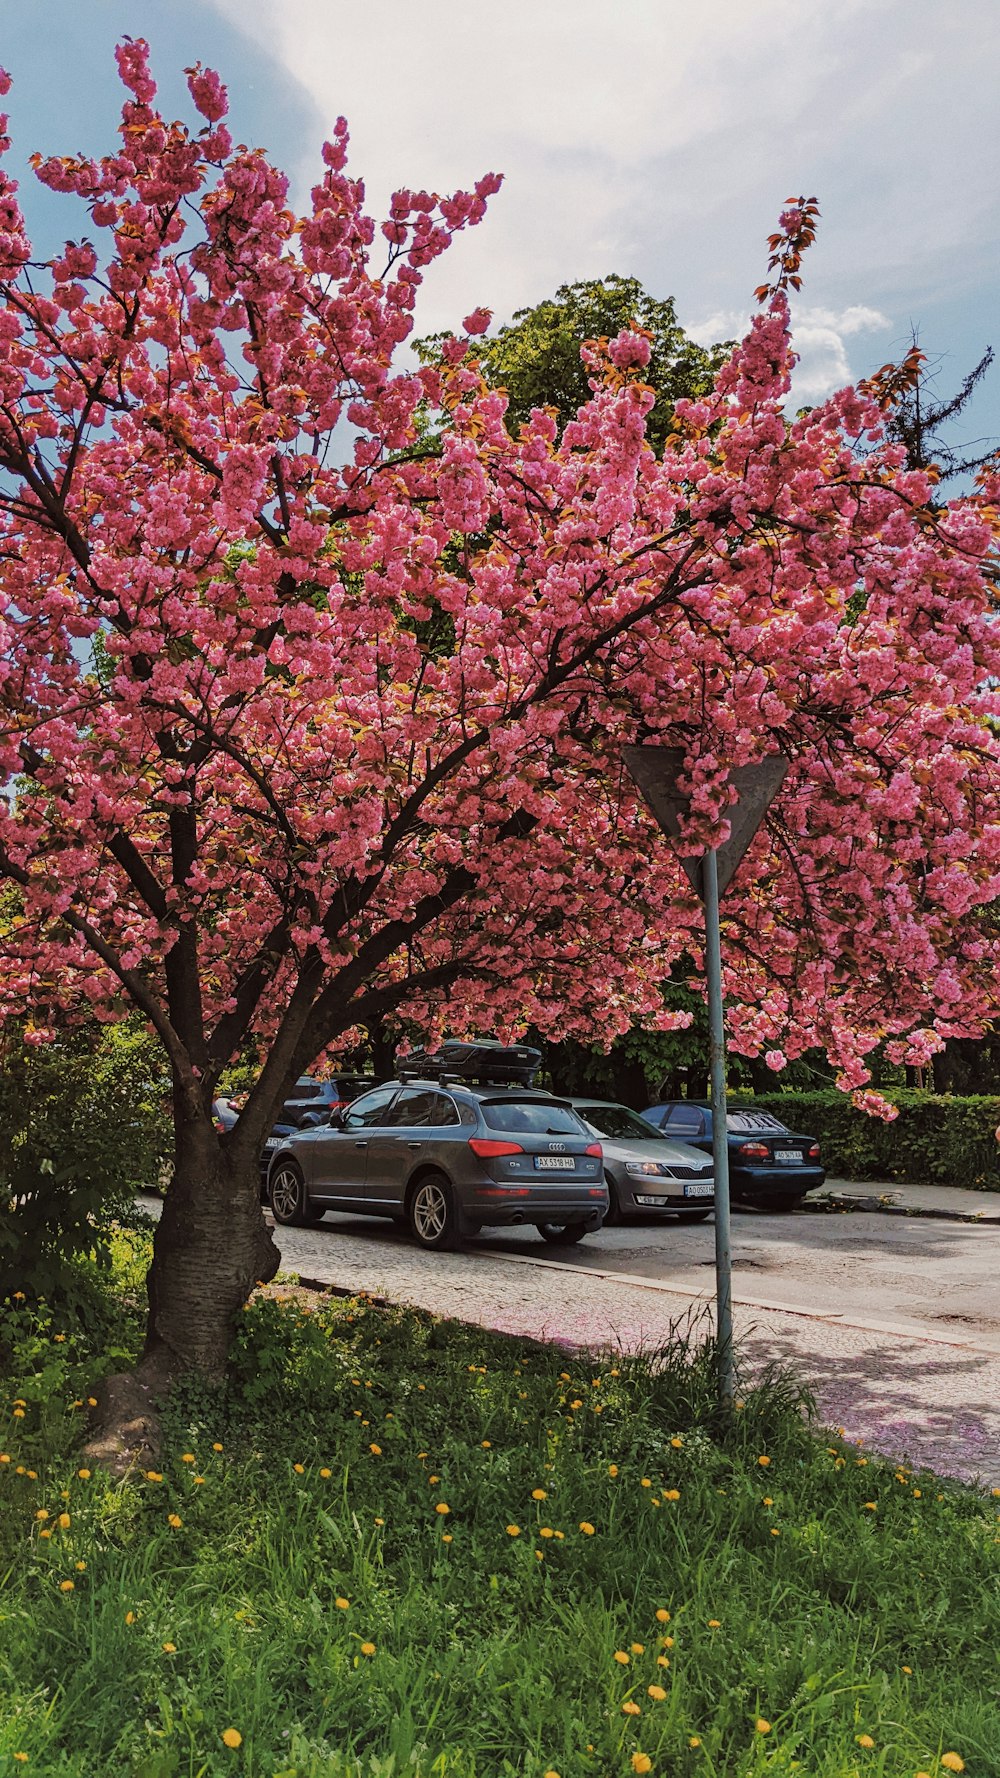 un albero con i fiori rosa